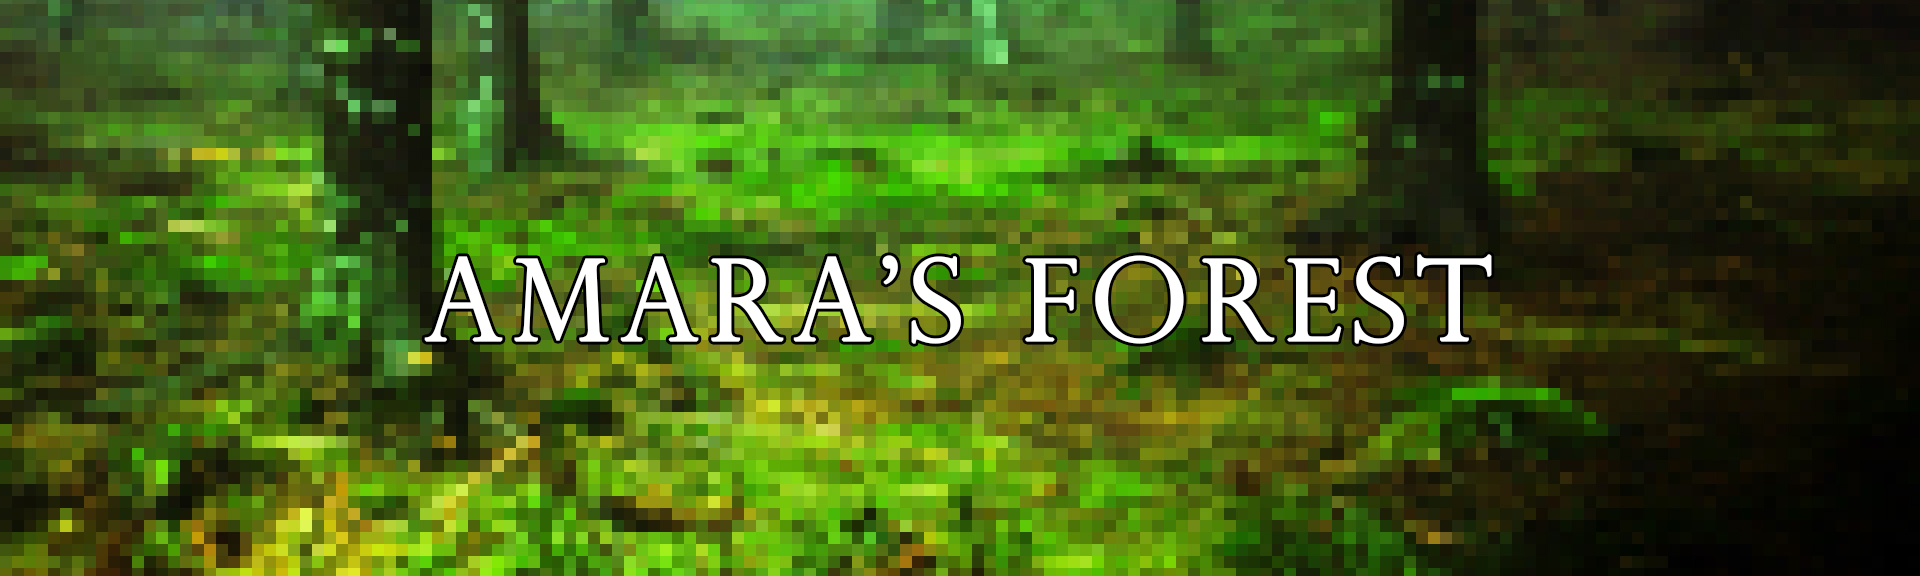 Amara's Forest